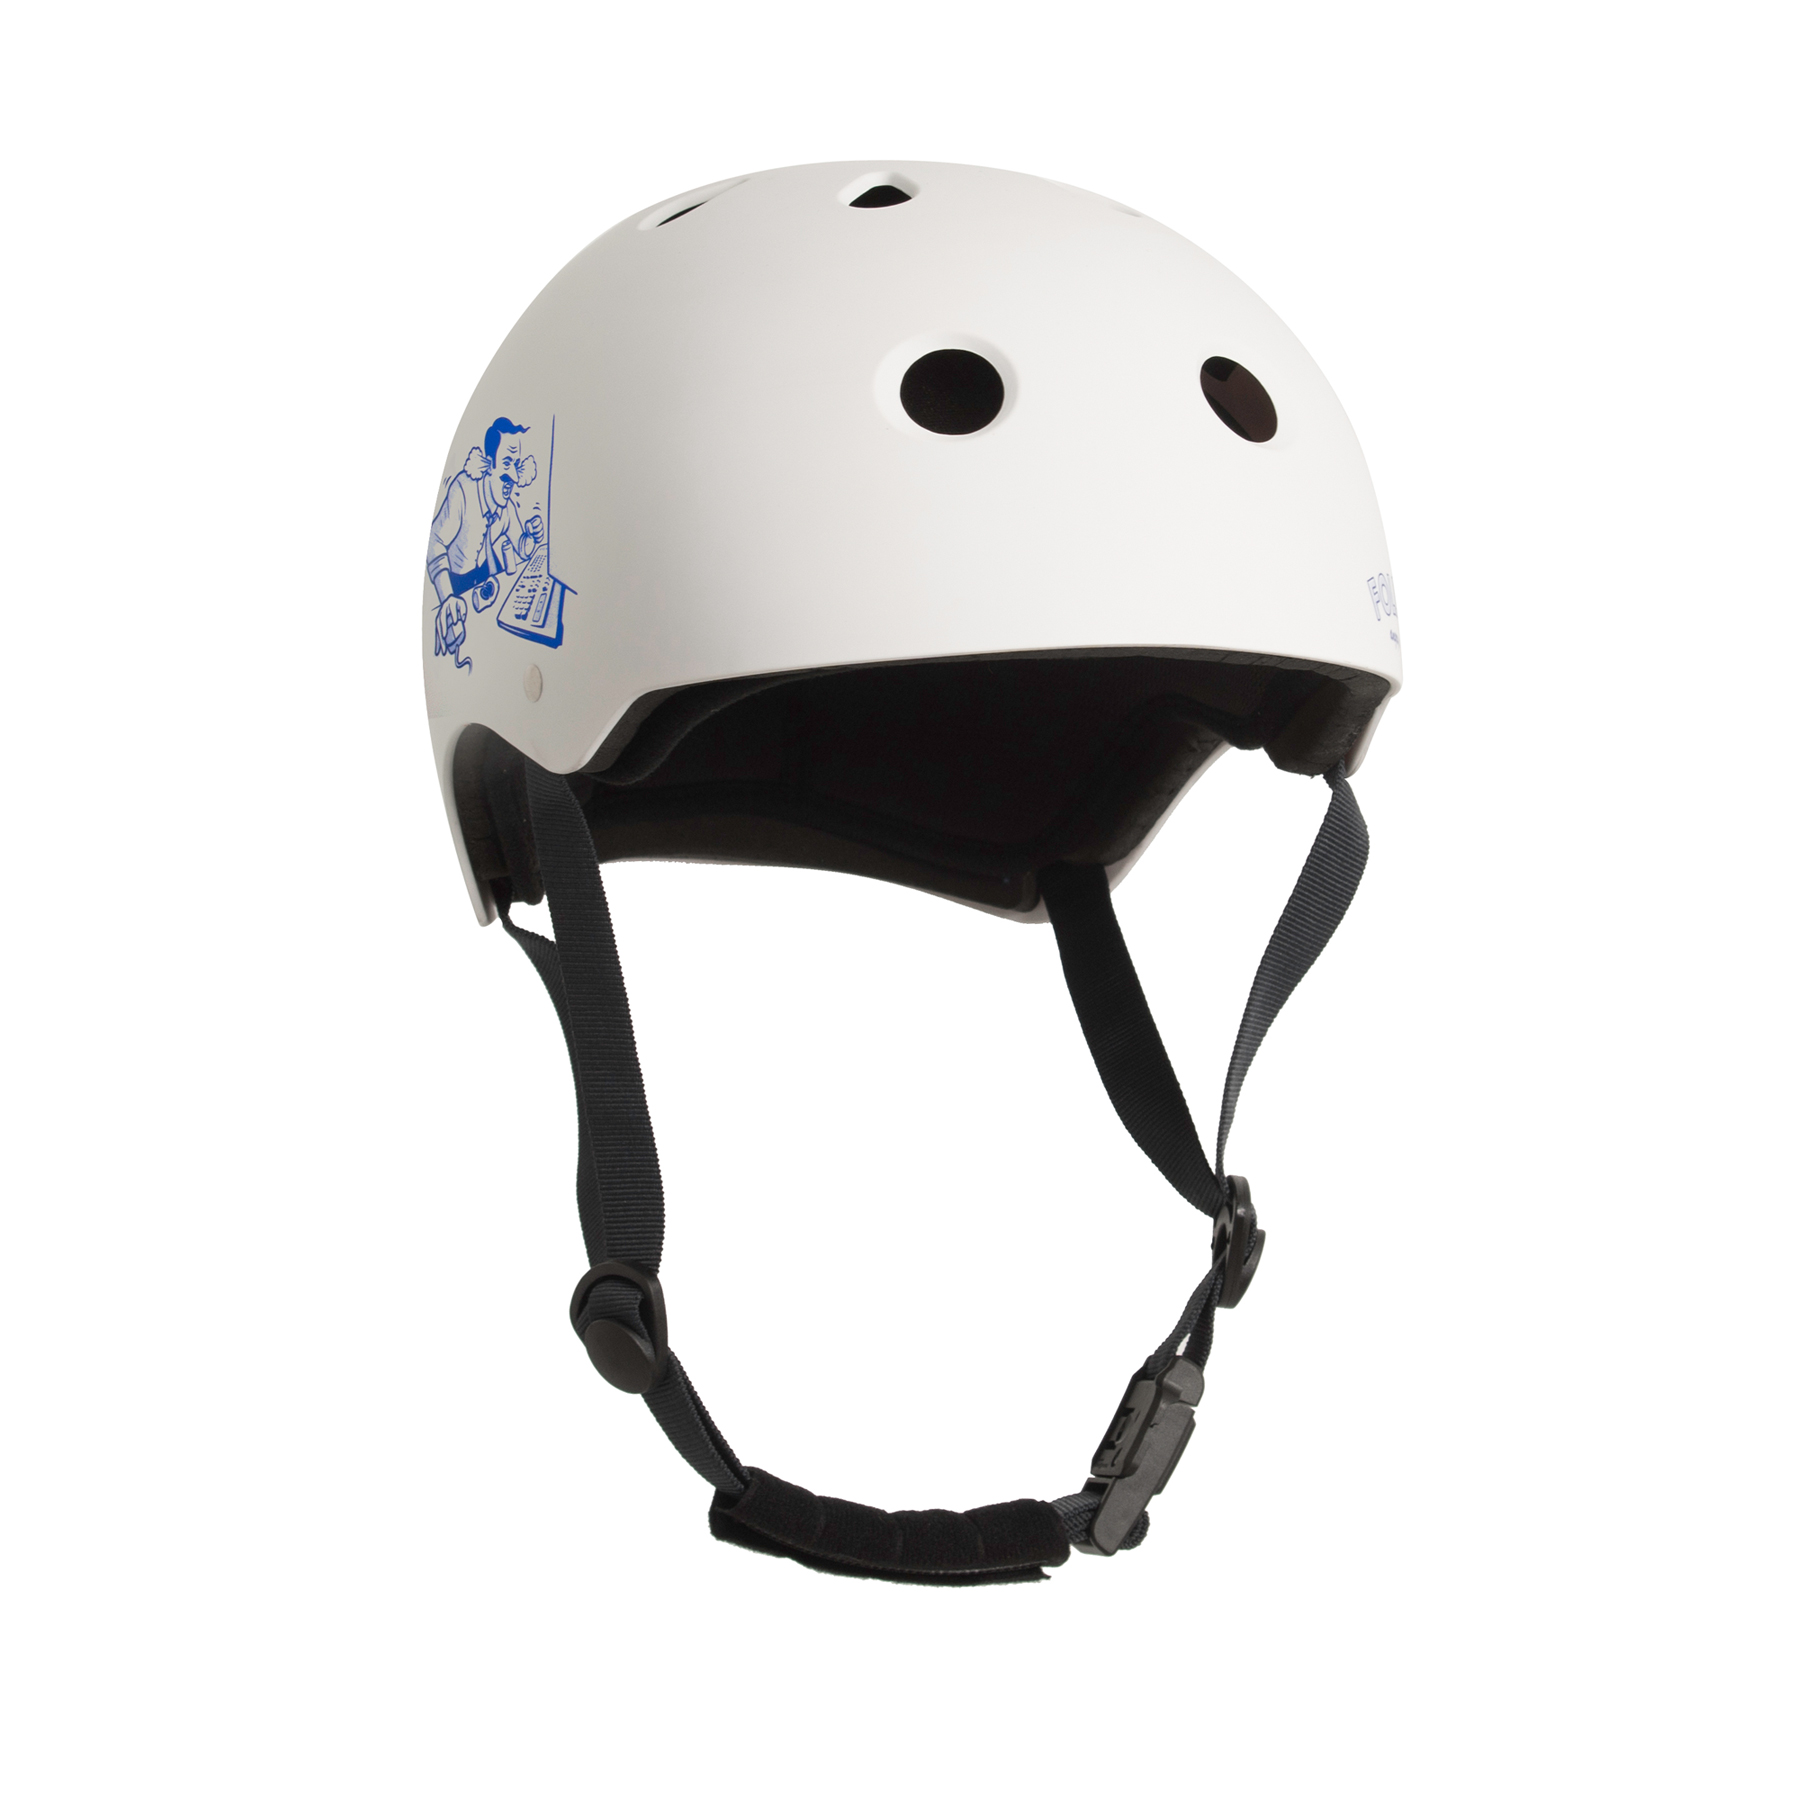 Follow S/S 22 Water helmets